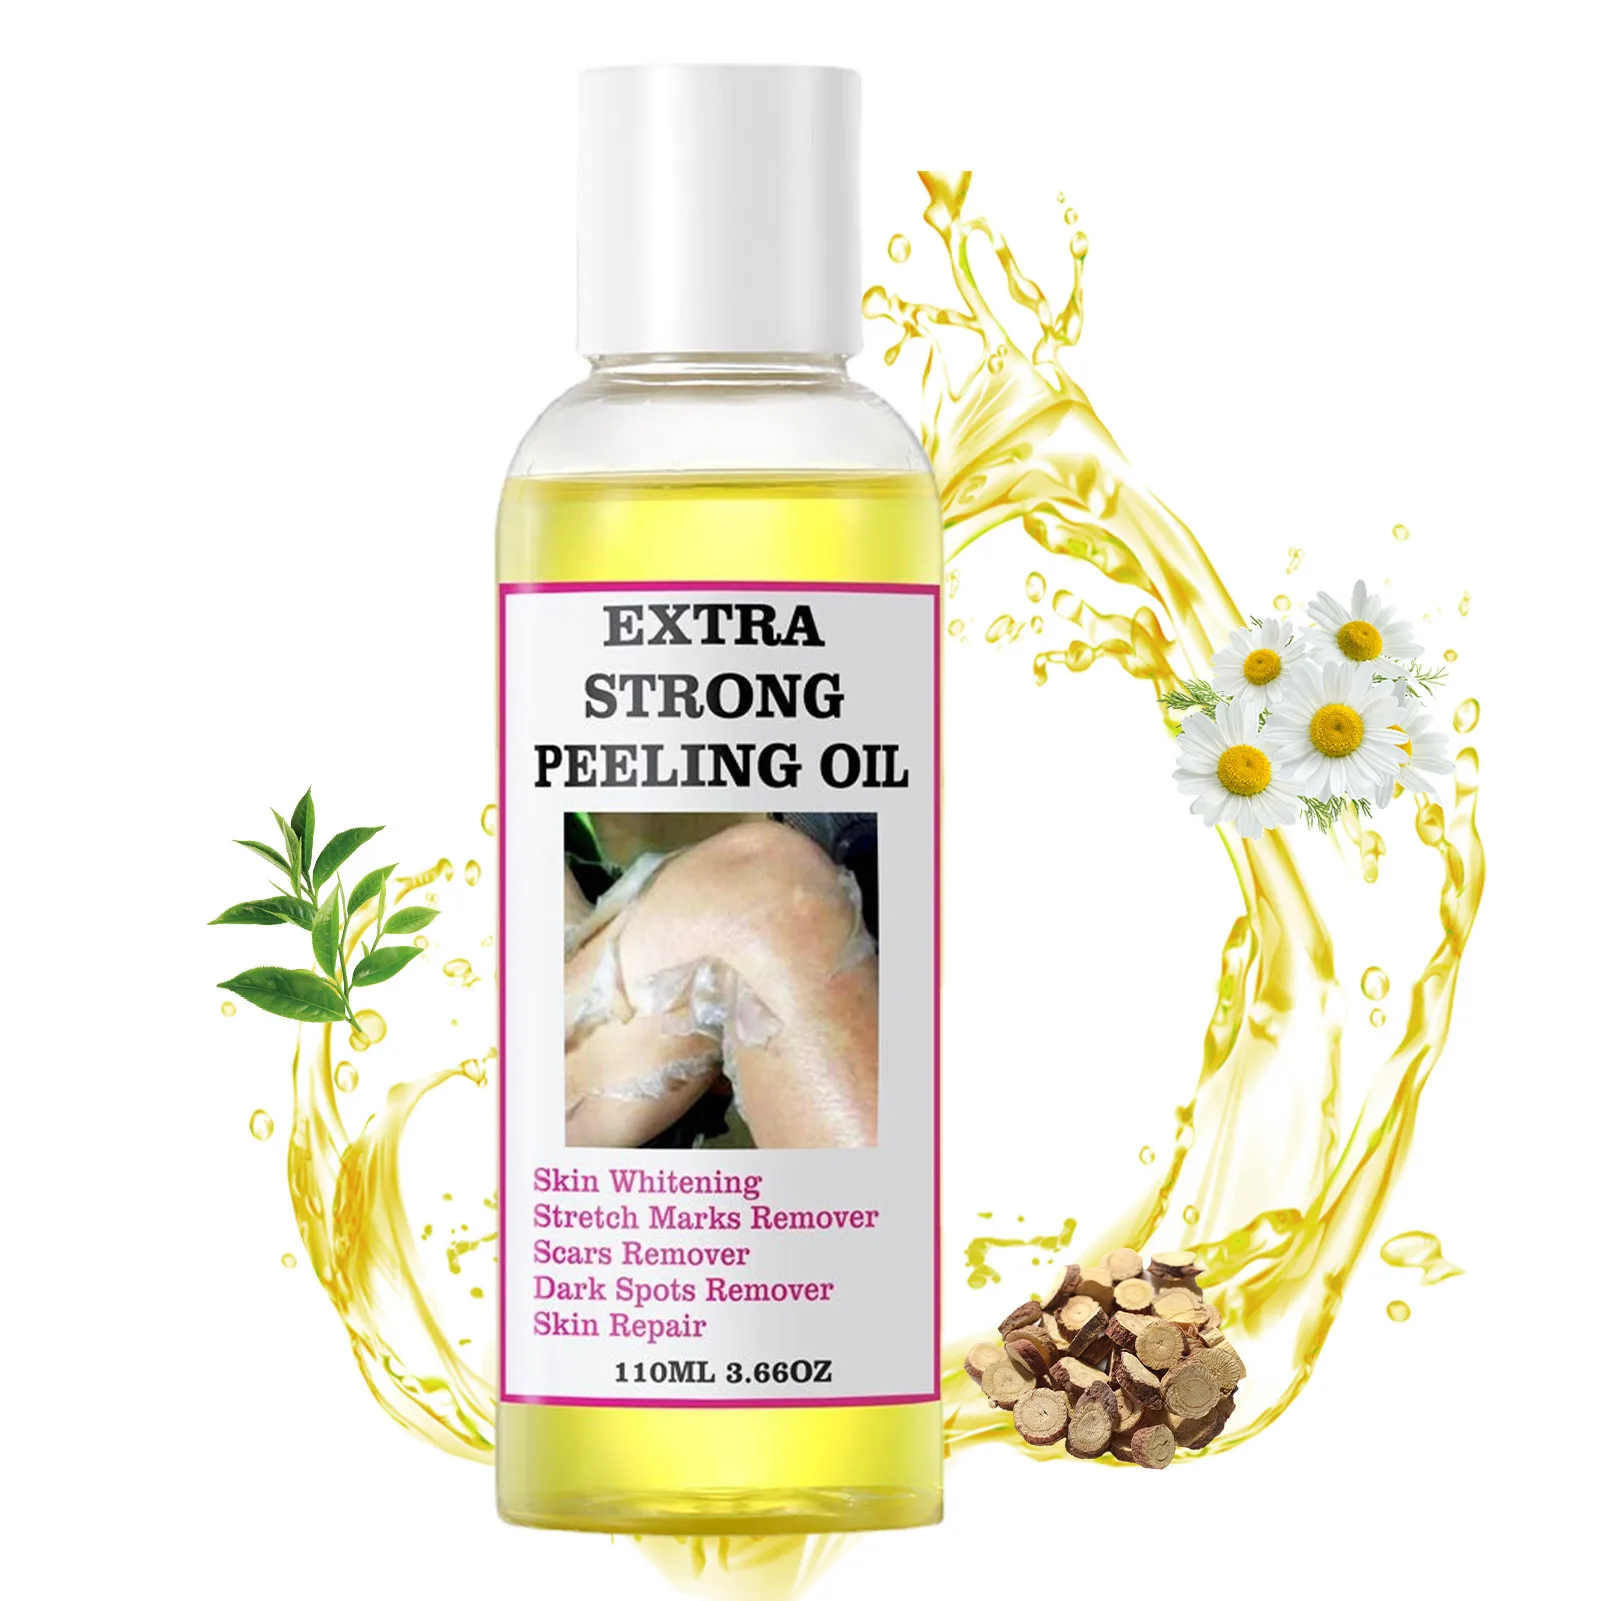 Strong Peeling Oil For Unisex And All Skin Types Full Body